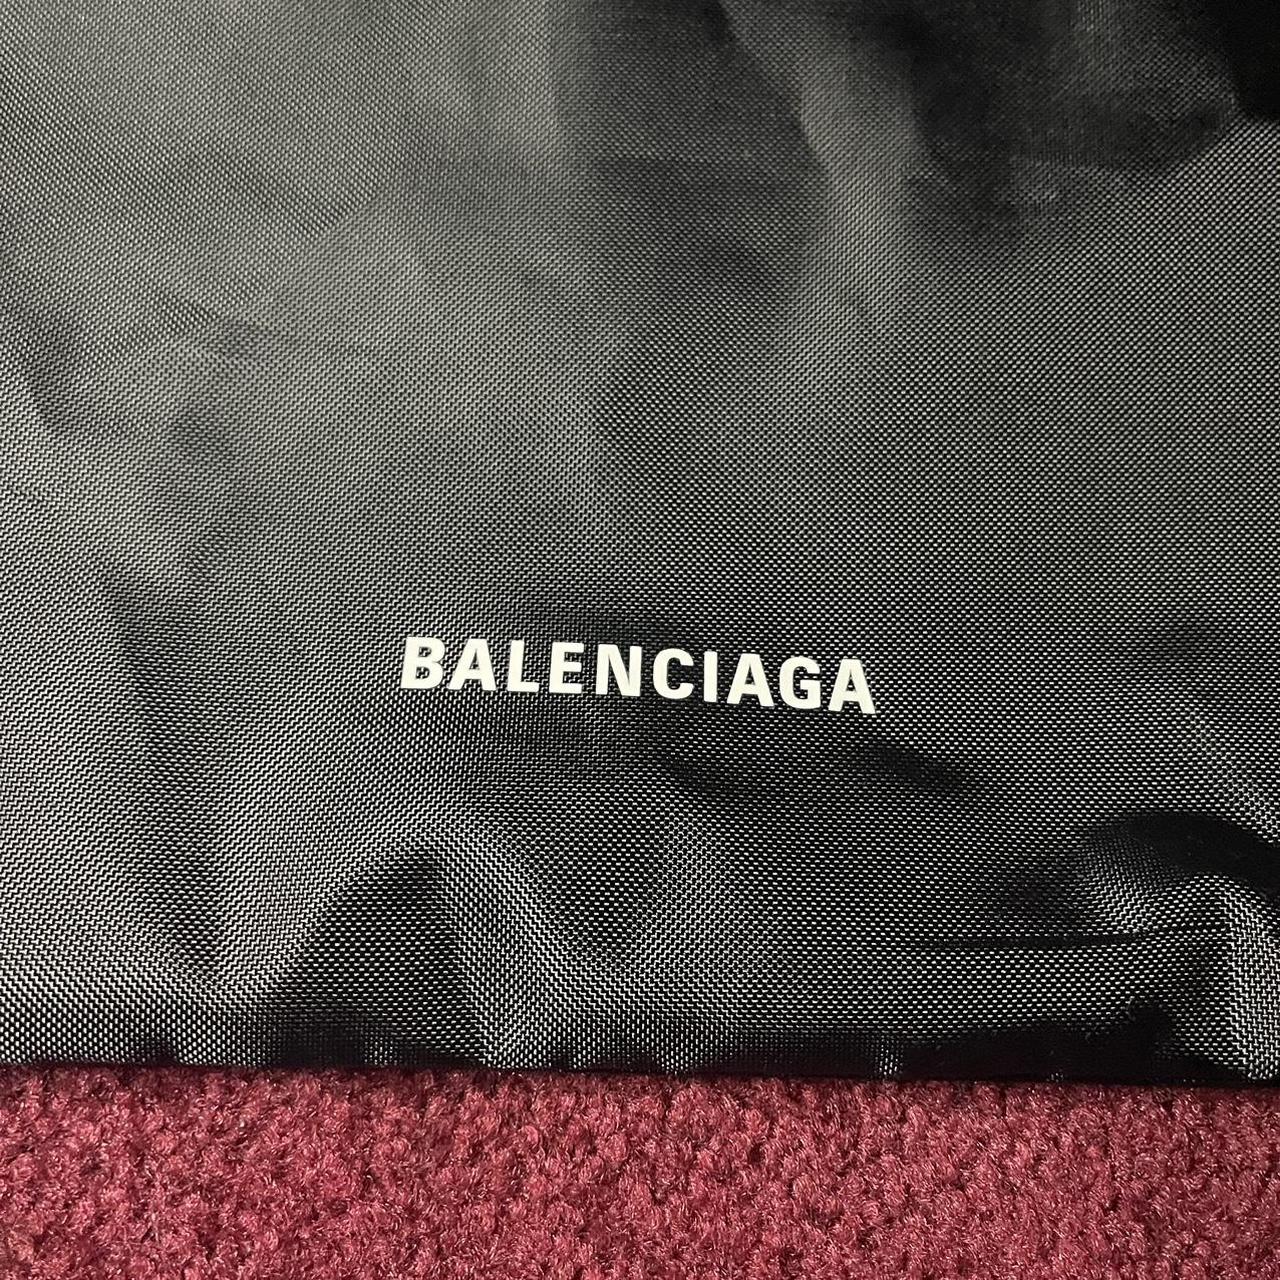 Balenciaga Men's Black and White Bag (2)